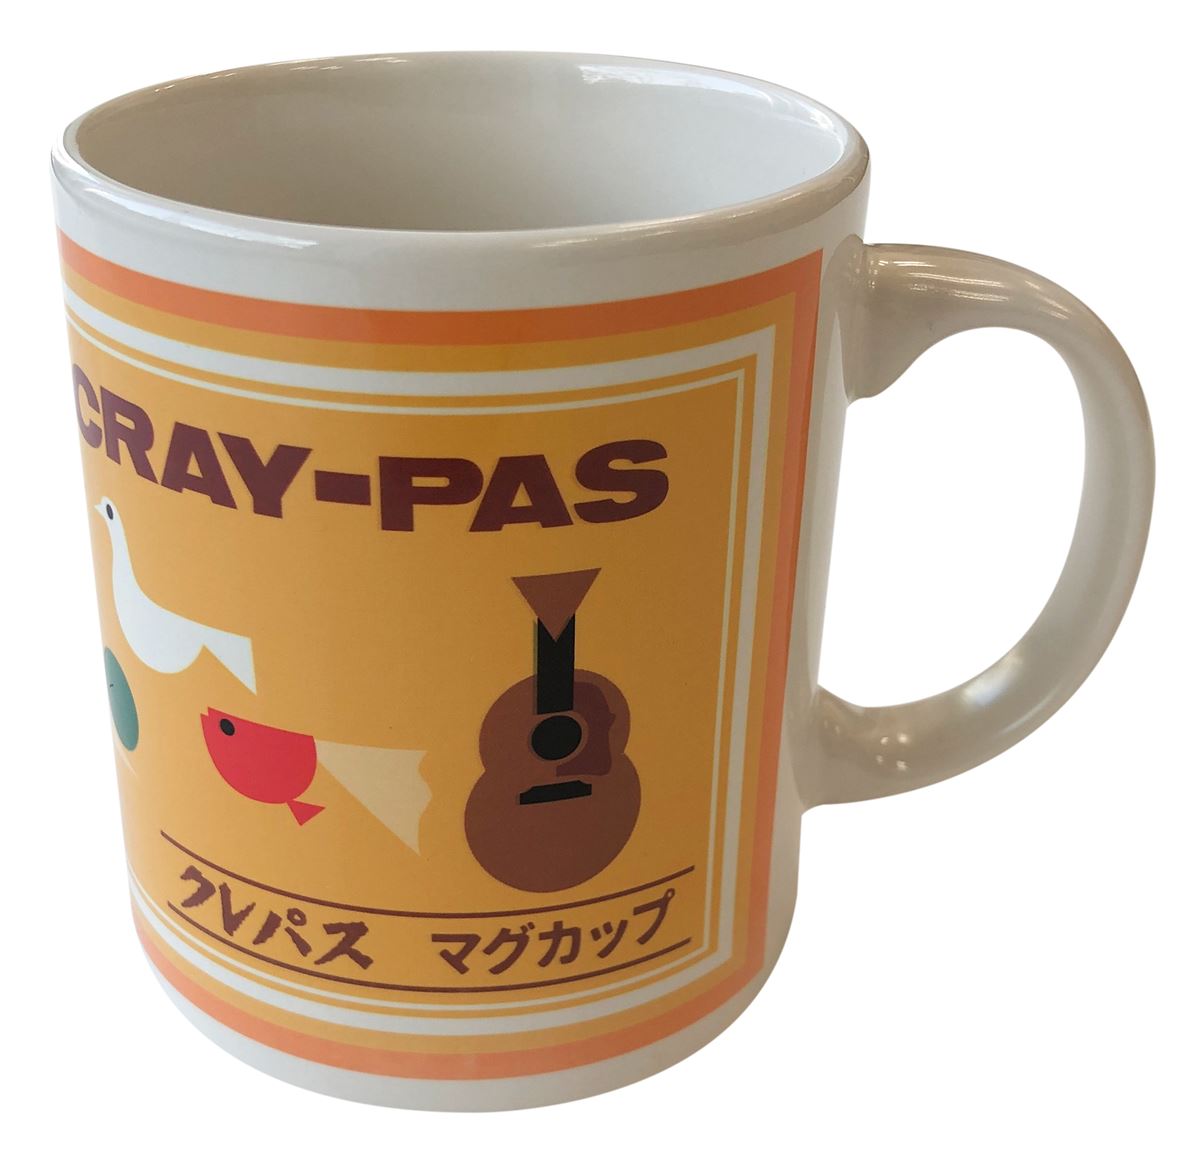 「HATA MOTOHIRO × CRAY-PAS」クレパスマグカップ